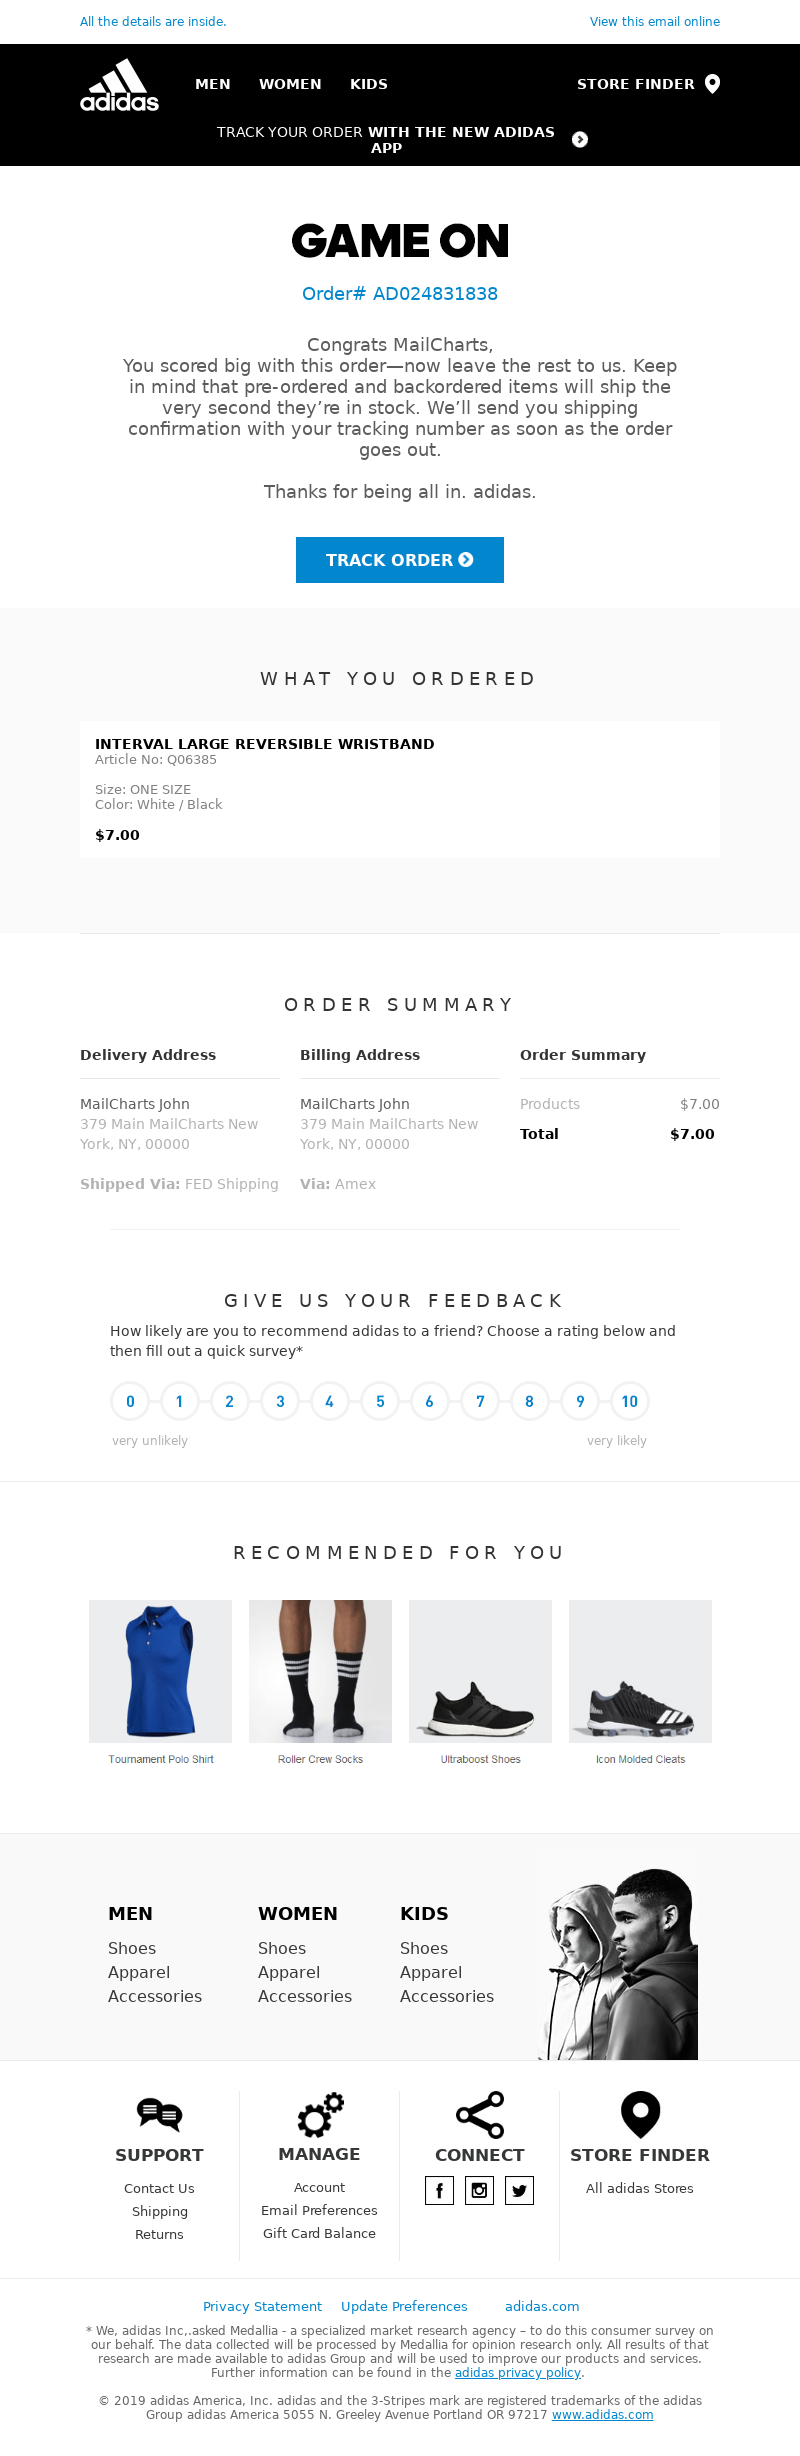 adidas online order receipt